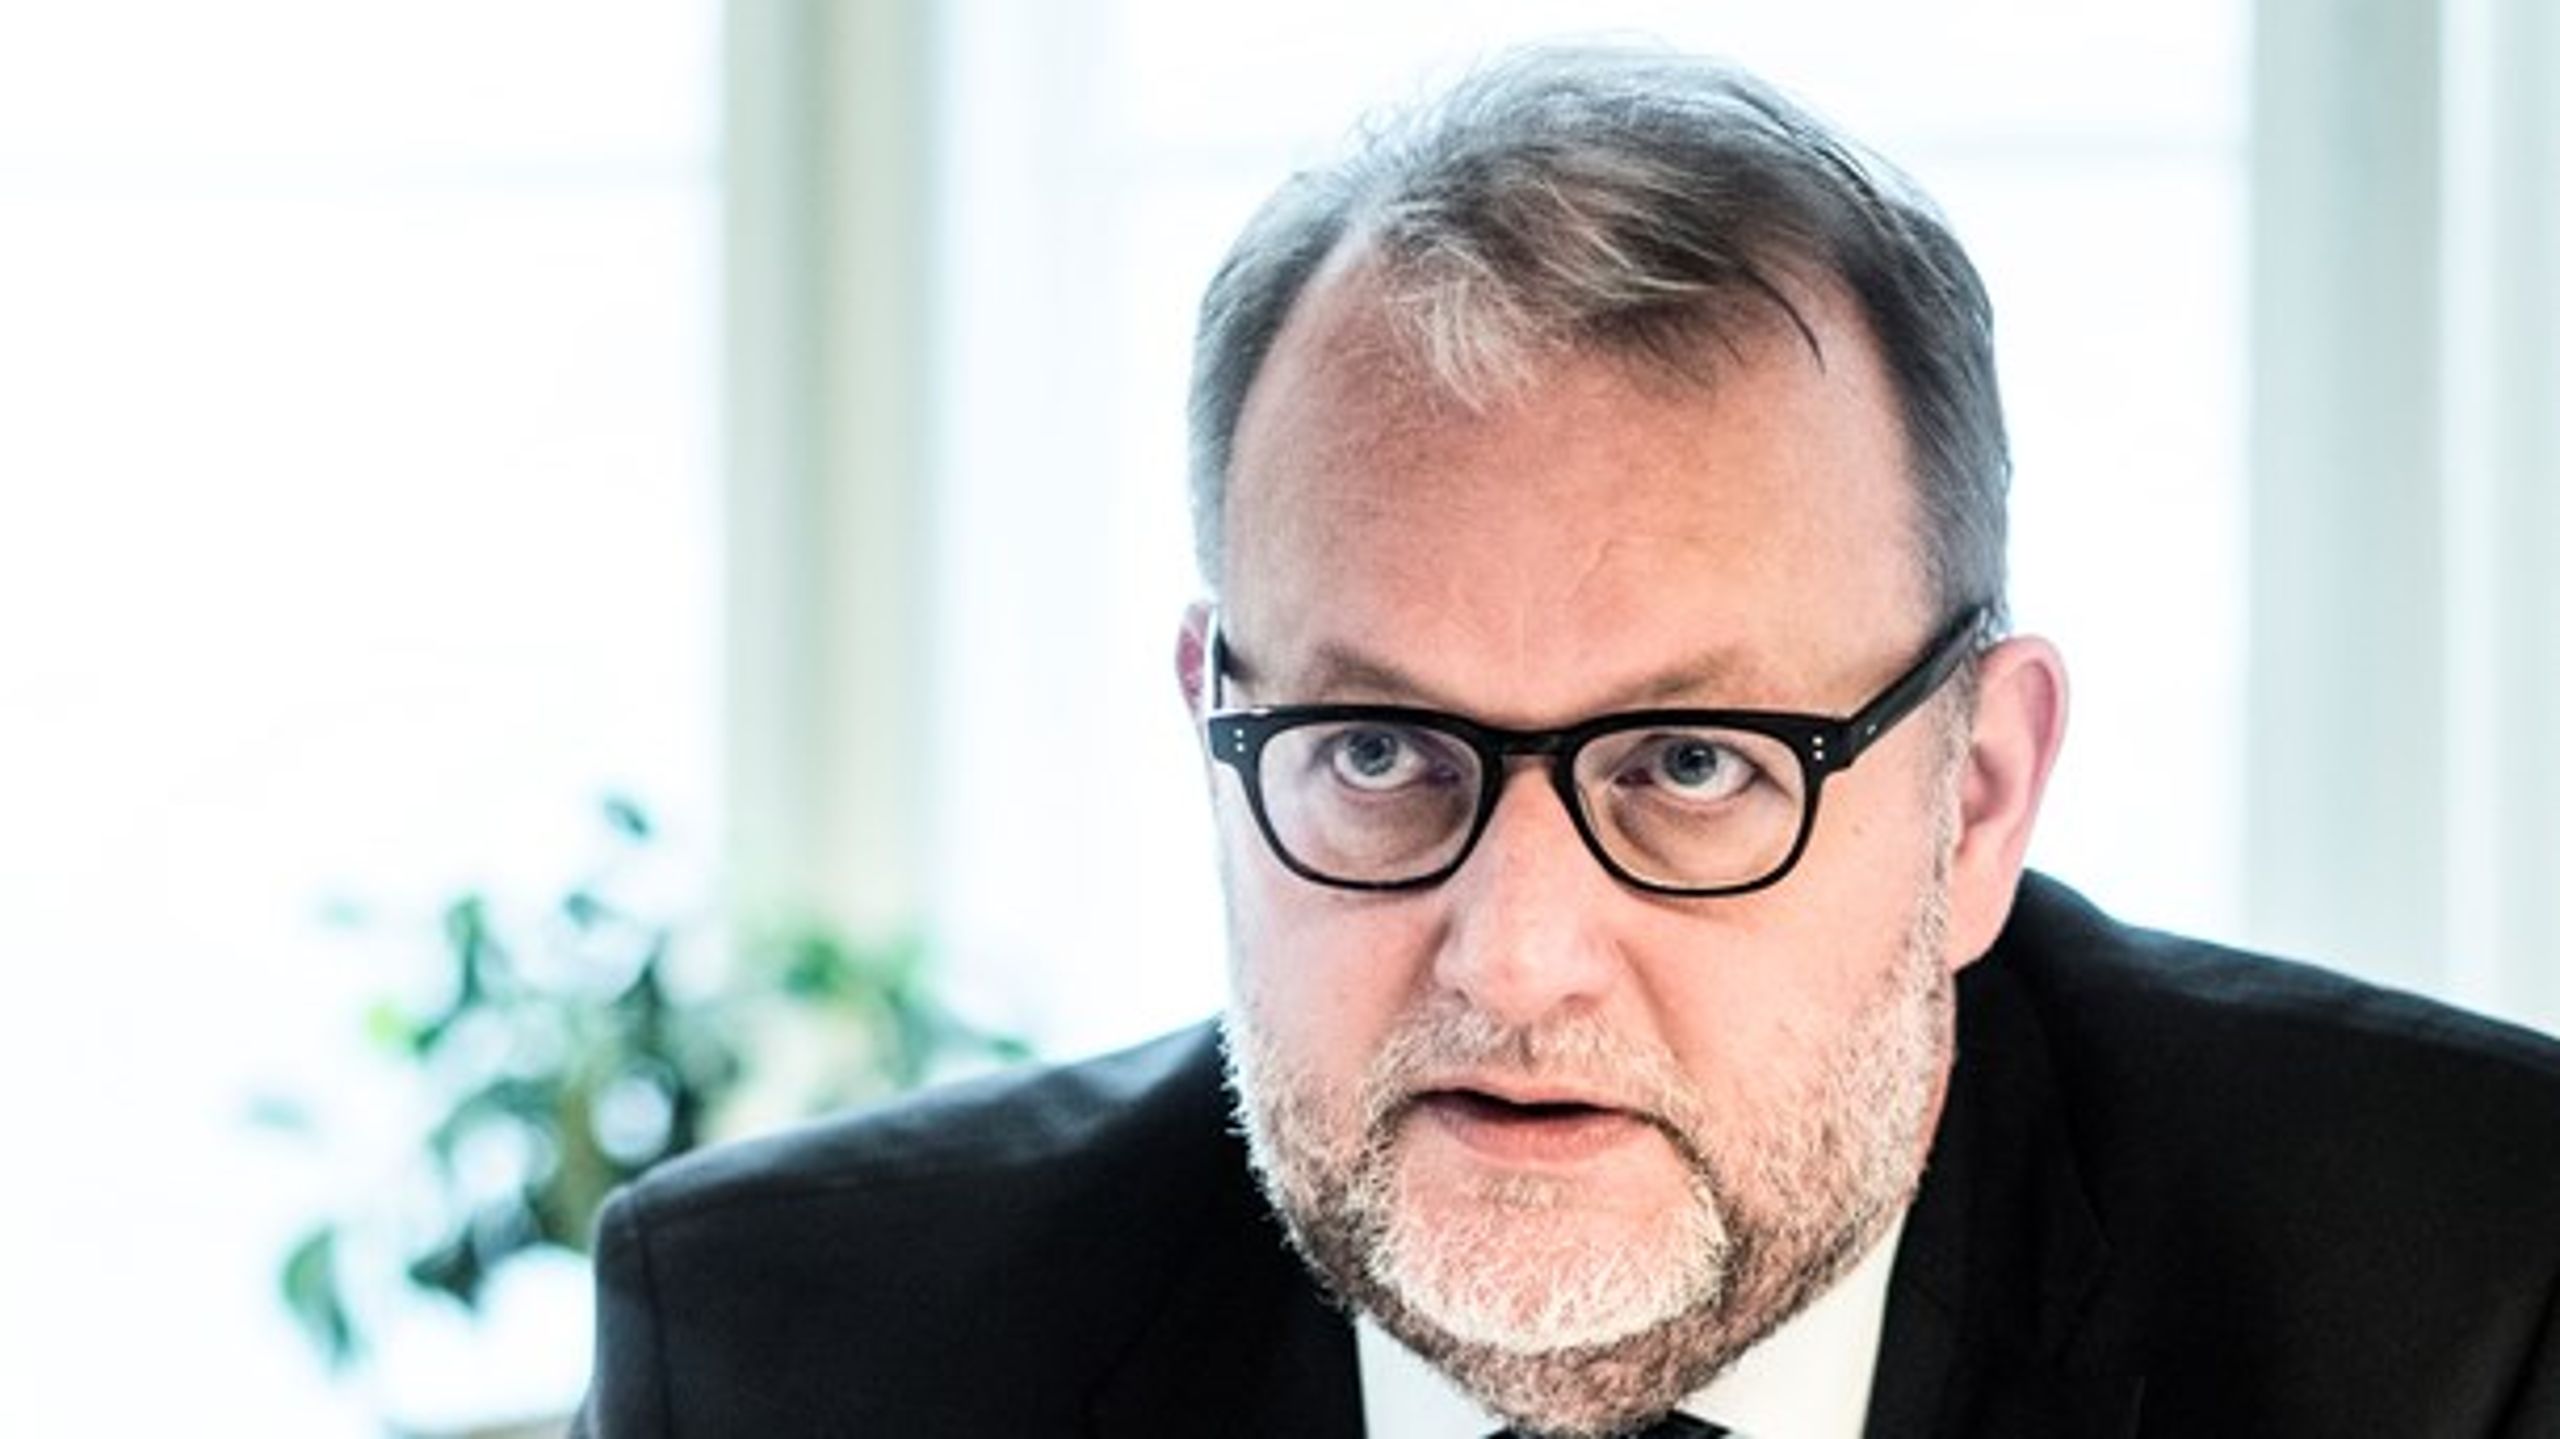 Klima- og energiminister Lars Christian Lilleholt (V) ventes onsdag&nbsp;at give tilladelse til olieboringer og fracking&nbsp;på Lolland.